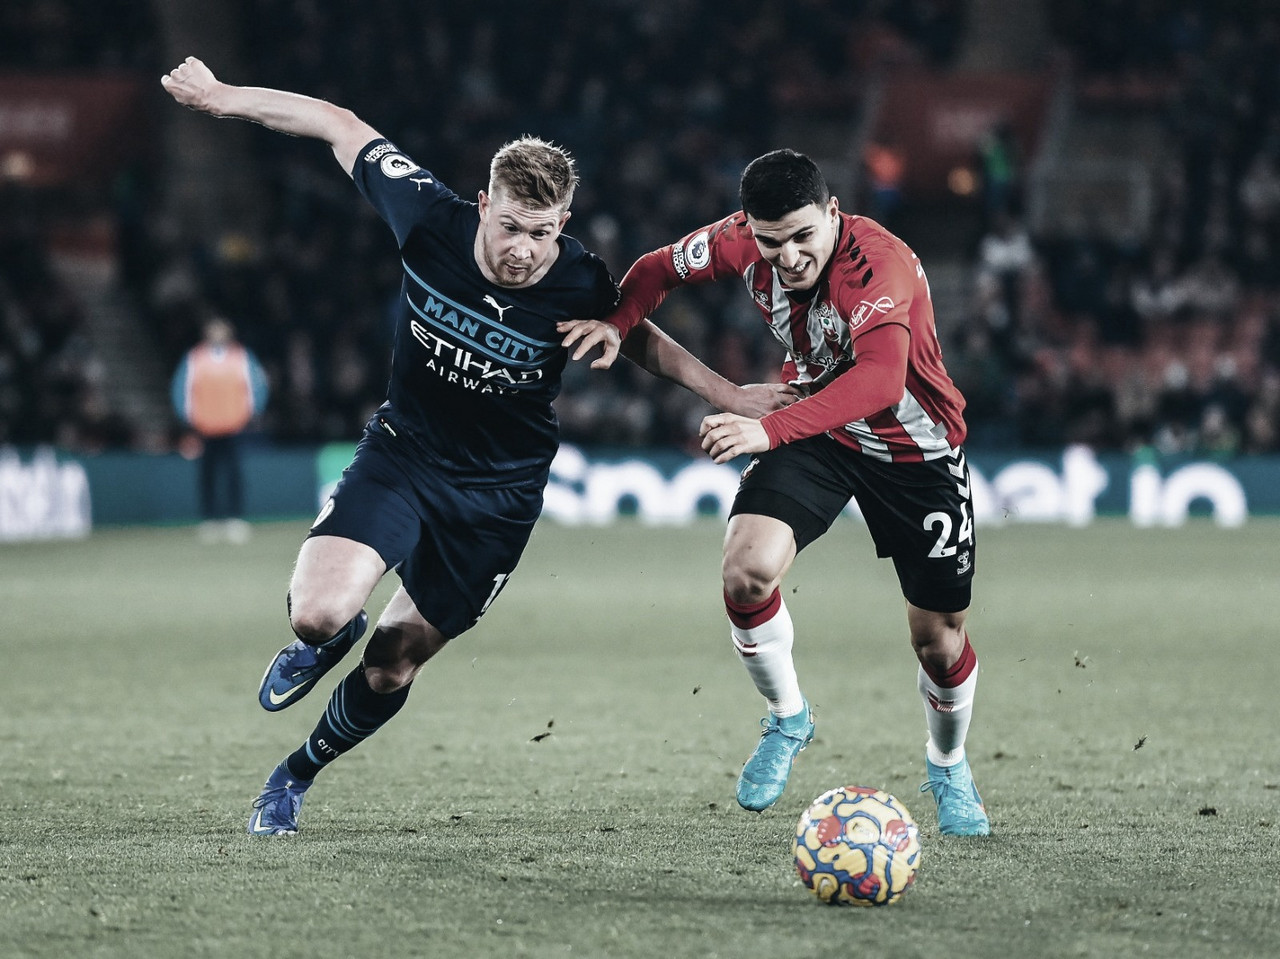 Southampton empata com Manchester City e encerra sequência de vitórias
do líder